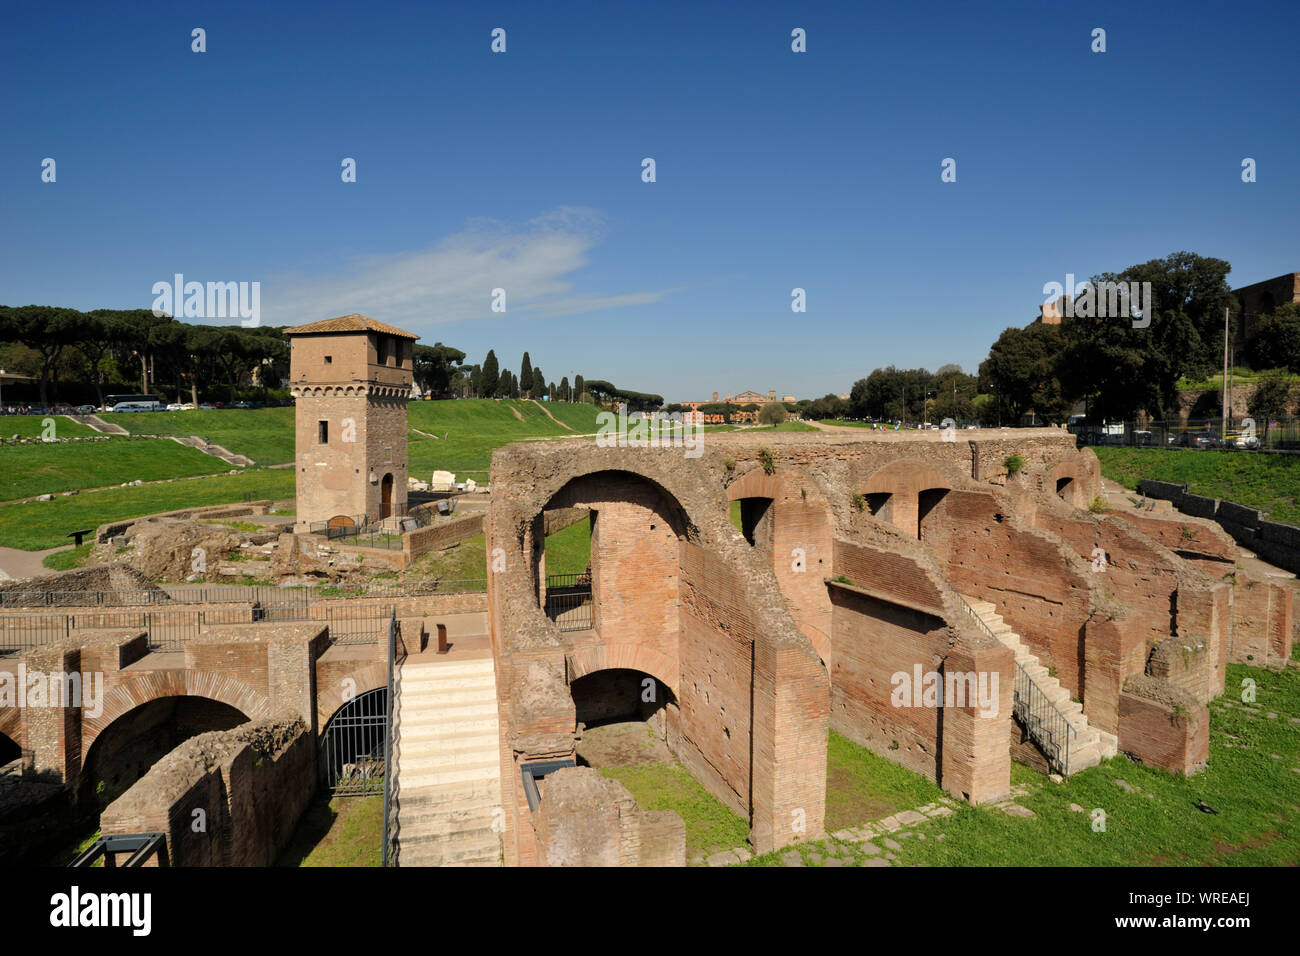 Italia, Roma, Circus Maximus Foto de stock